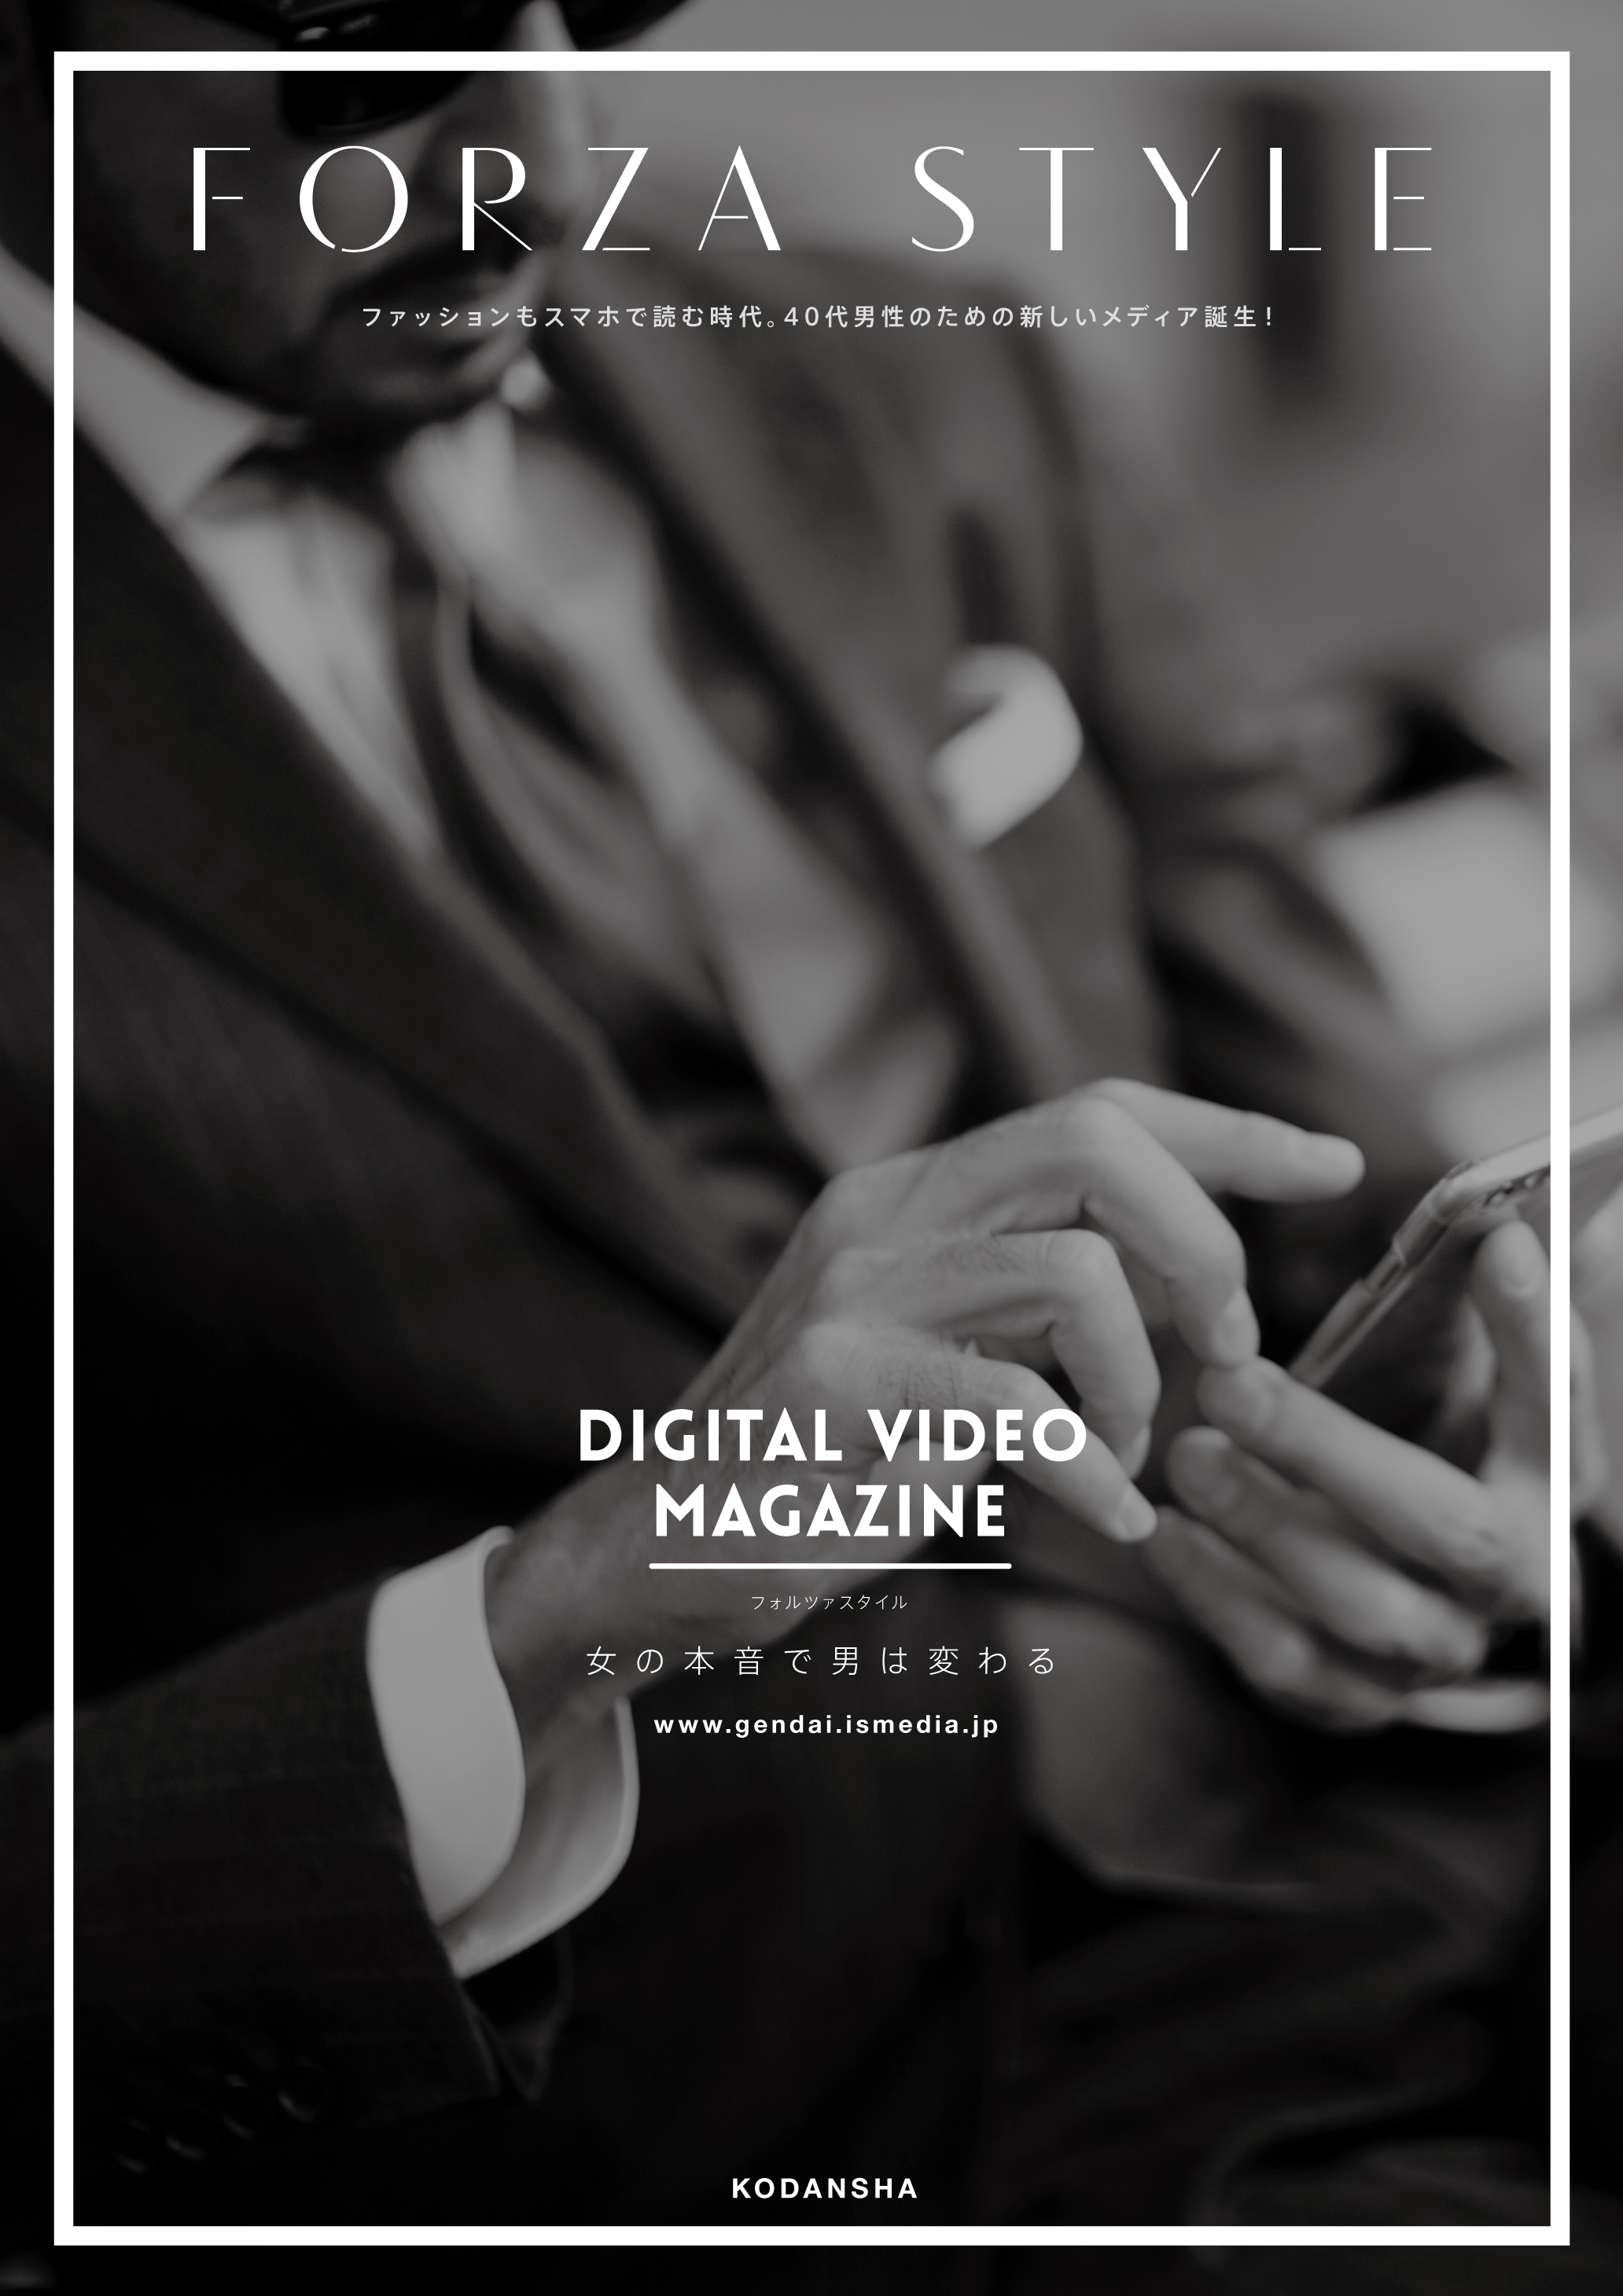 ミドルエイジ男性のためのデジタルビデオマガジン Forza Style フォルツァスタイル 本日 本格創刊しました 株式会社講談社のプレスリリース